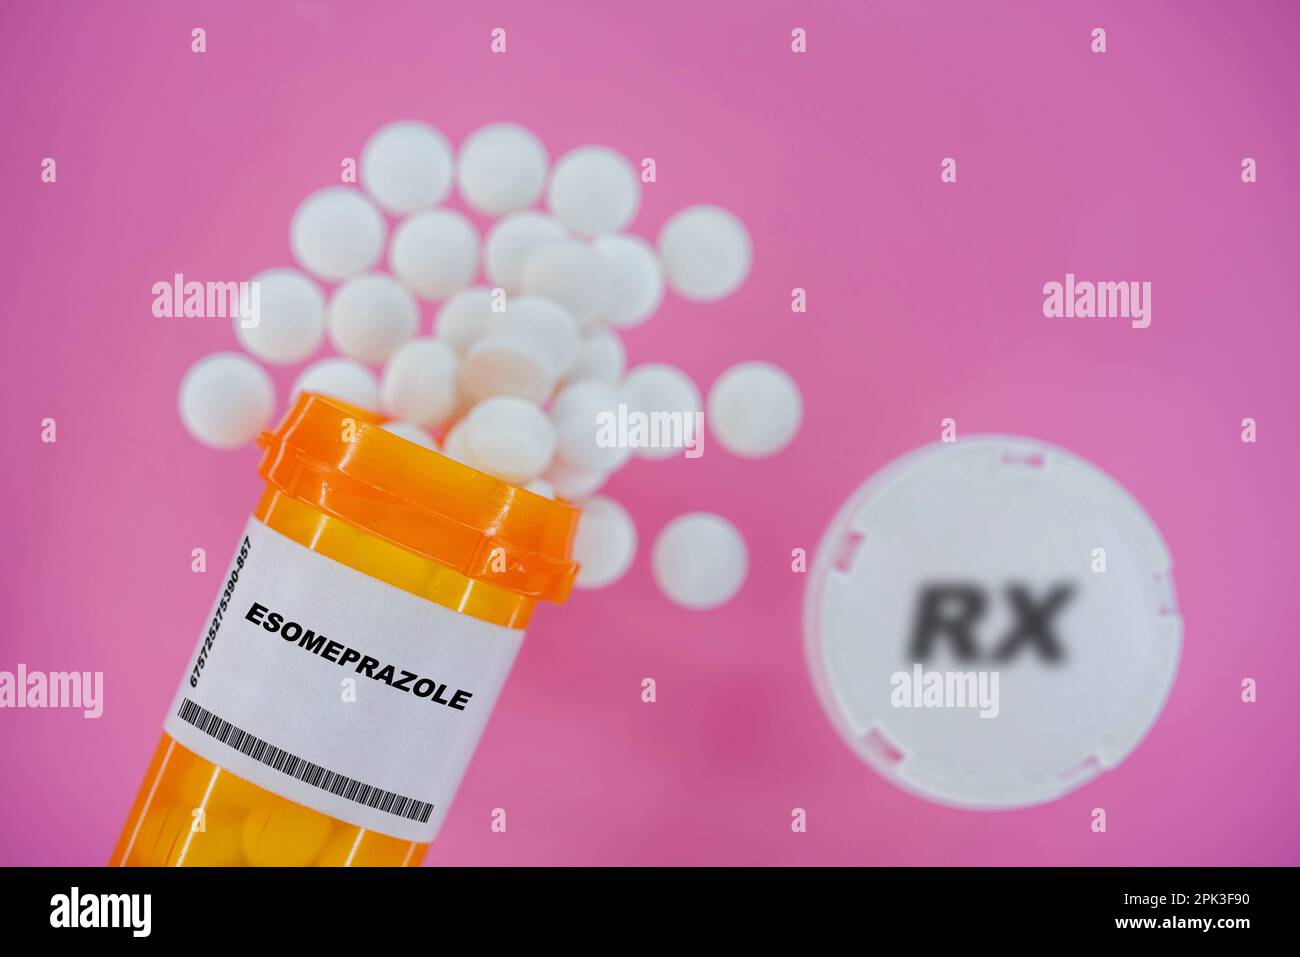 Esoméprazole Rx comprimés dans un flacon plactique avec comprimés. Les pilules débordent du contenant jaune sur fond rose. Banque D'Images